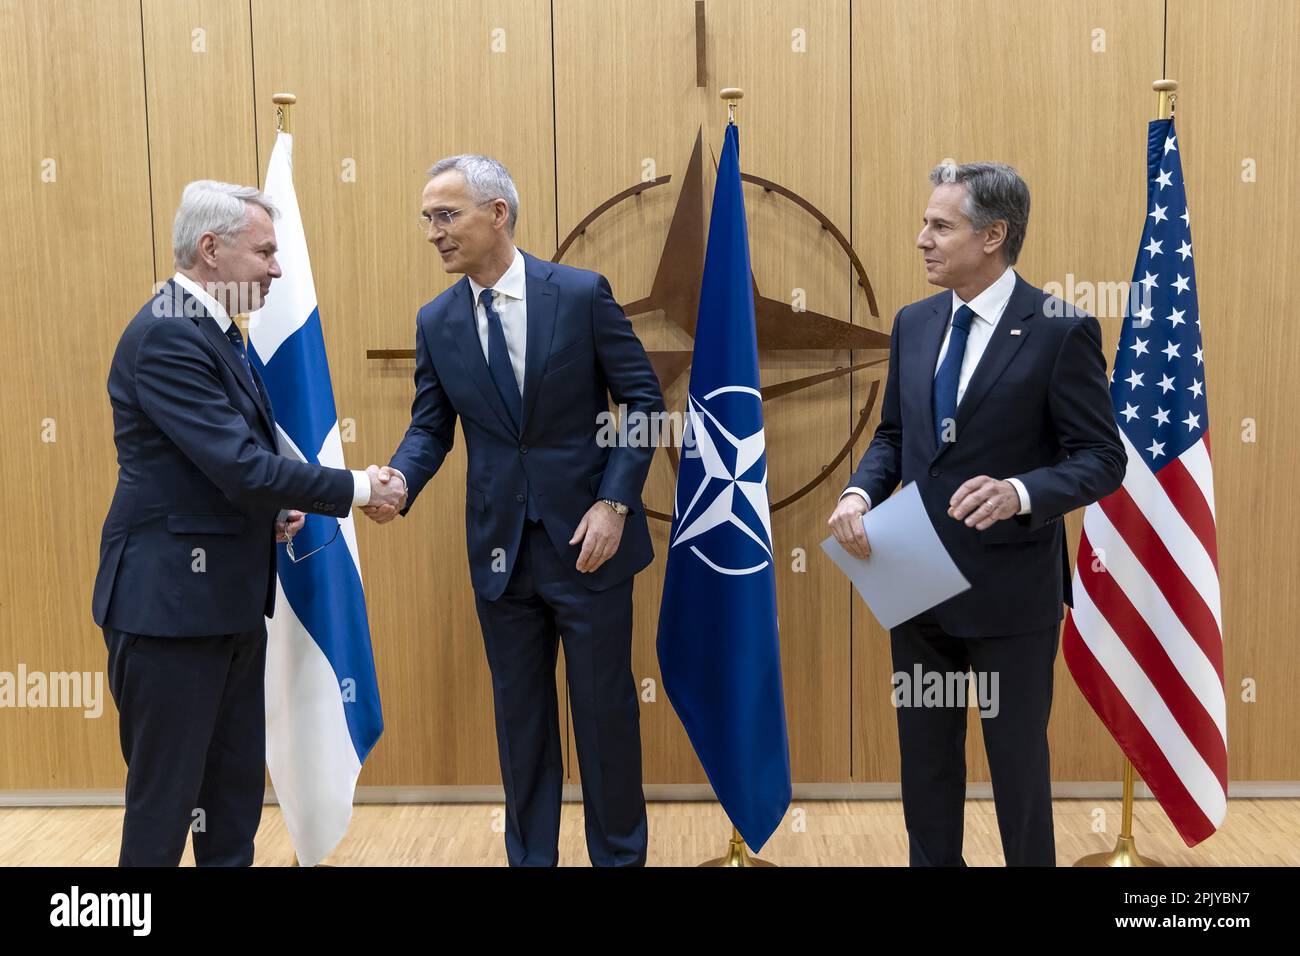 Der finnische Außenminister Pekka Haavisto (L) übergibt den Beitritt Finnlands zu NATO-Dokumenten an US-Außenminister Antony Blinks (R) und NATO-Generalsekretär Jens Stoltenberg (C) im Rahmen einer feierlichen Teilnahme Finnlands an der NATO-Tagung der Außenminister des NATO-Nordatlantikrates (NAC). In Brüssel am Dienstag, den 4. April 2023. Finnland ist der NATO am 4. April beigetreten, um das 31. NATO-Mitglied zu werden. Dies ist ein historischer Wandel, der durch den Krieg in der Ukraine ausgelöst wurde und in Russland Wut hervorgerufen hat, wo Beamte den Schritt als Bedrohung angesehen haben. Foto: NATO/UPI Stockfoto